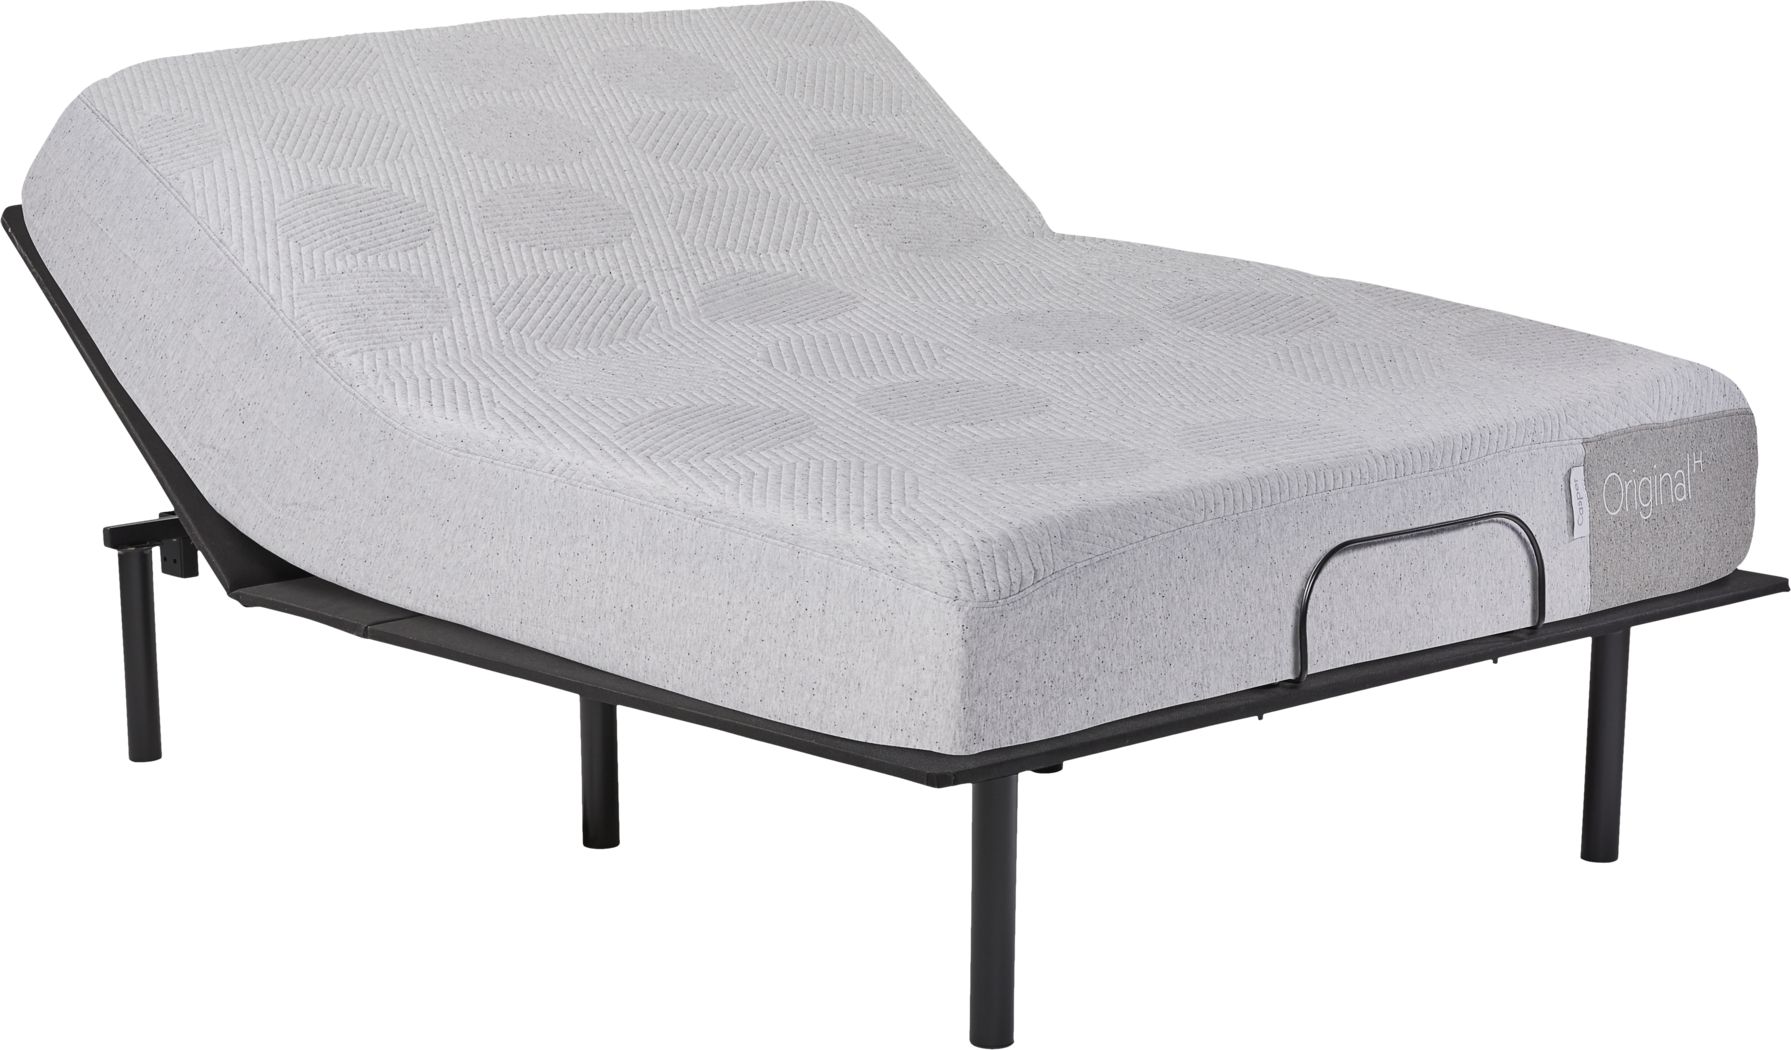 casper original hybrid mattress costco